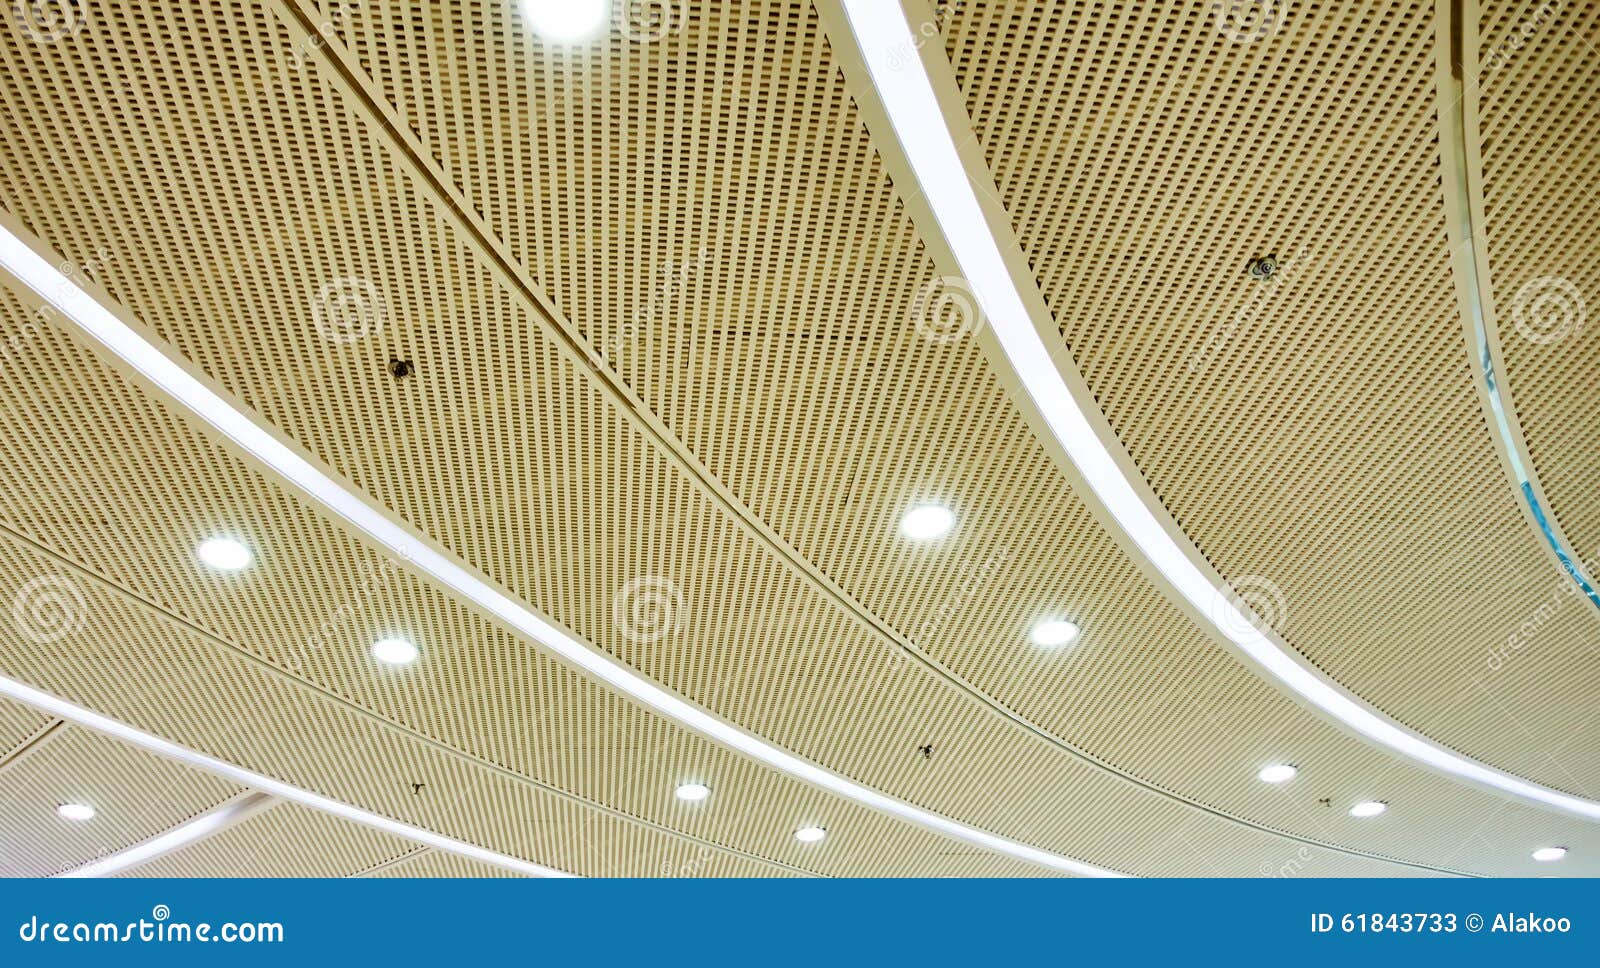 led ceiling lighting